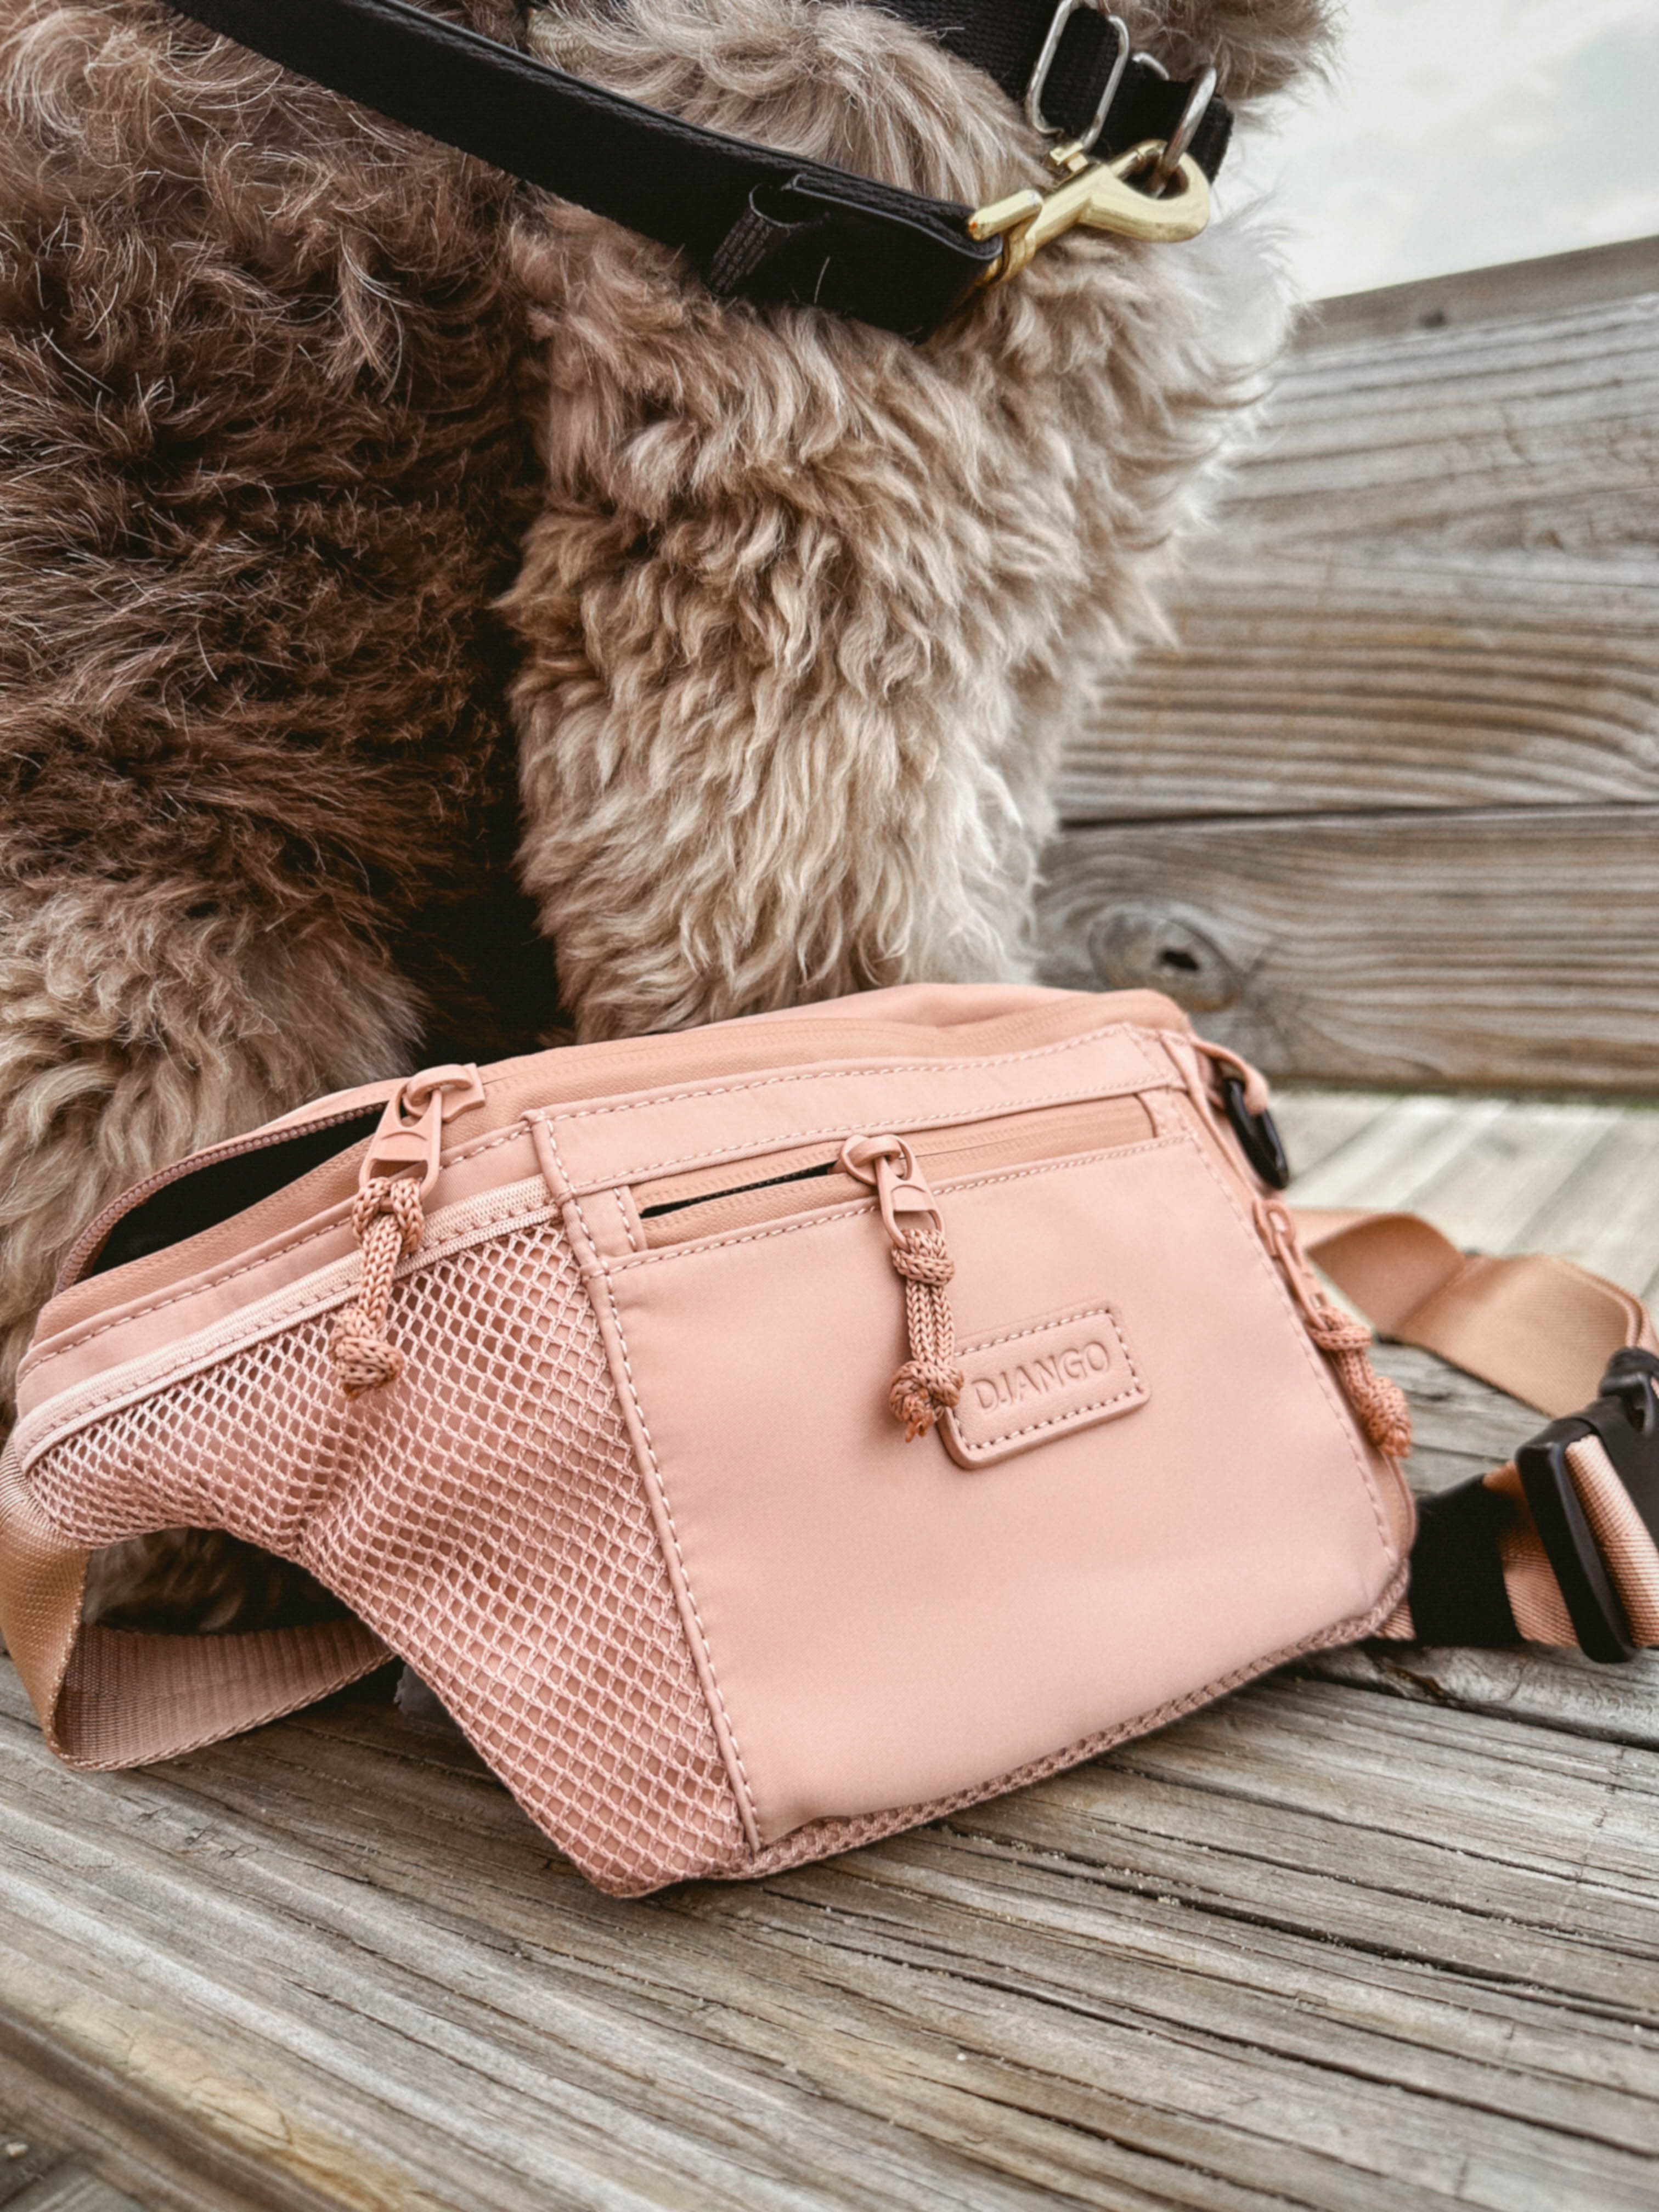 DJANGO's popular belt bag color Sand Pink is elegant, neutral, and understated. Wear the dog walking belt bag around your waist or over your shoulder. - djangobrand.com